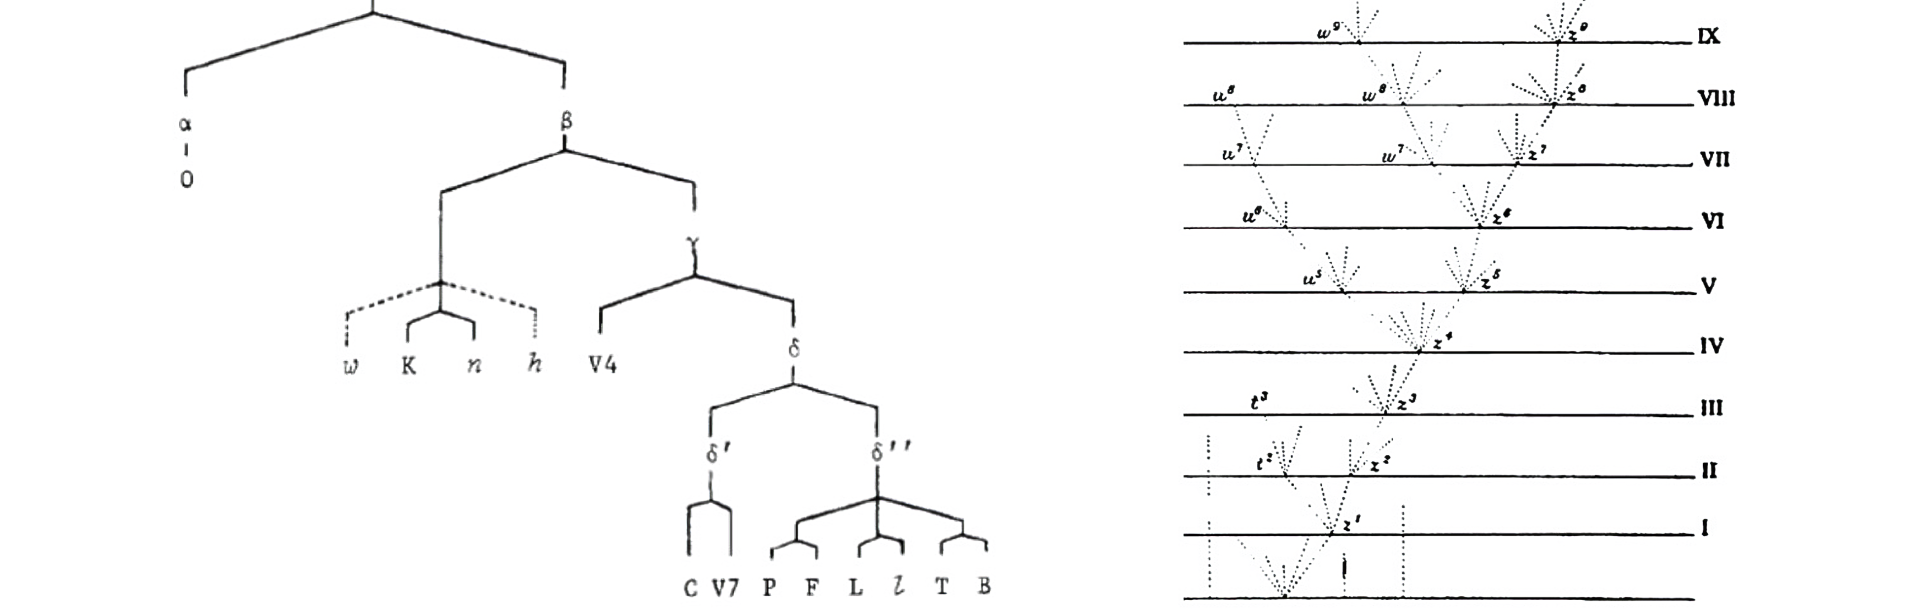 Stemma de la Chanson de Roland, selon Cesare Segre (1971) ; et arbre phylogénétique, tiré de Charles Darwin, On The Origin of Species (1859)